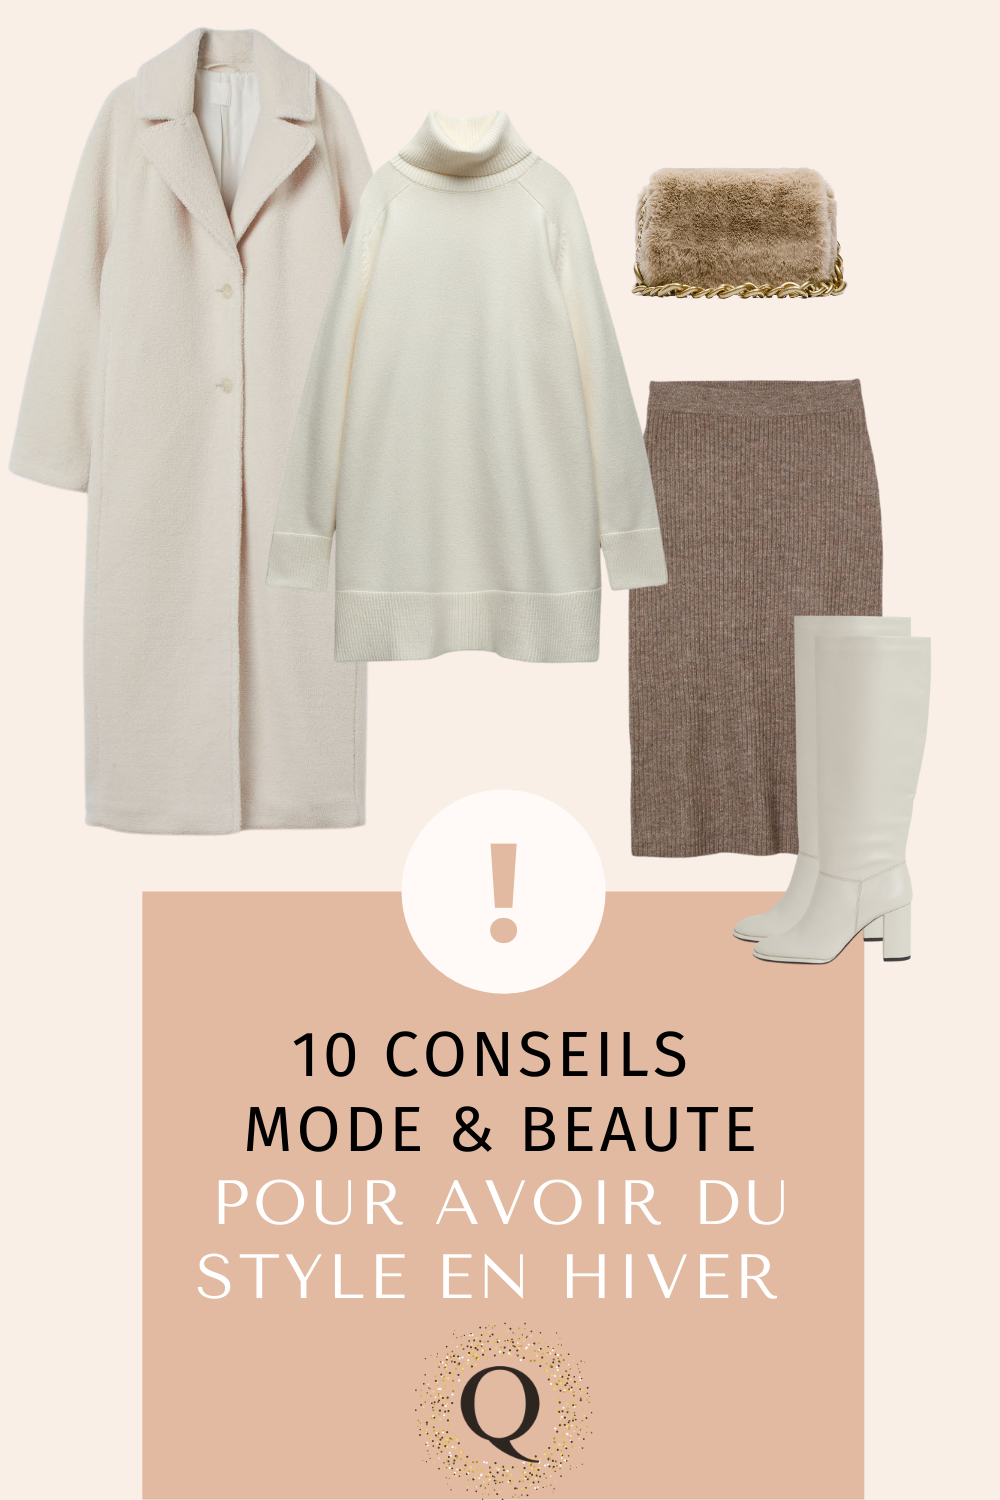 You are currently viewing 10 Conseils Mode et Beauté pour avoir du style en hiver